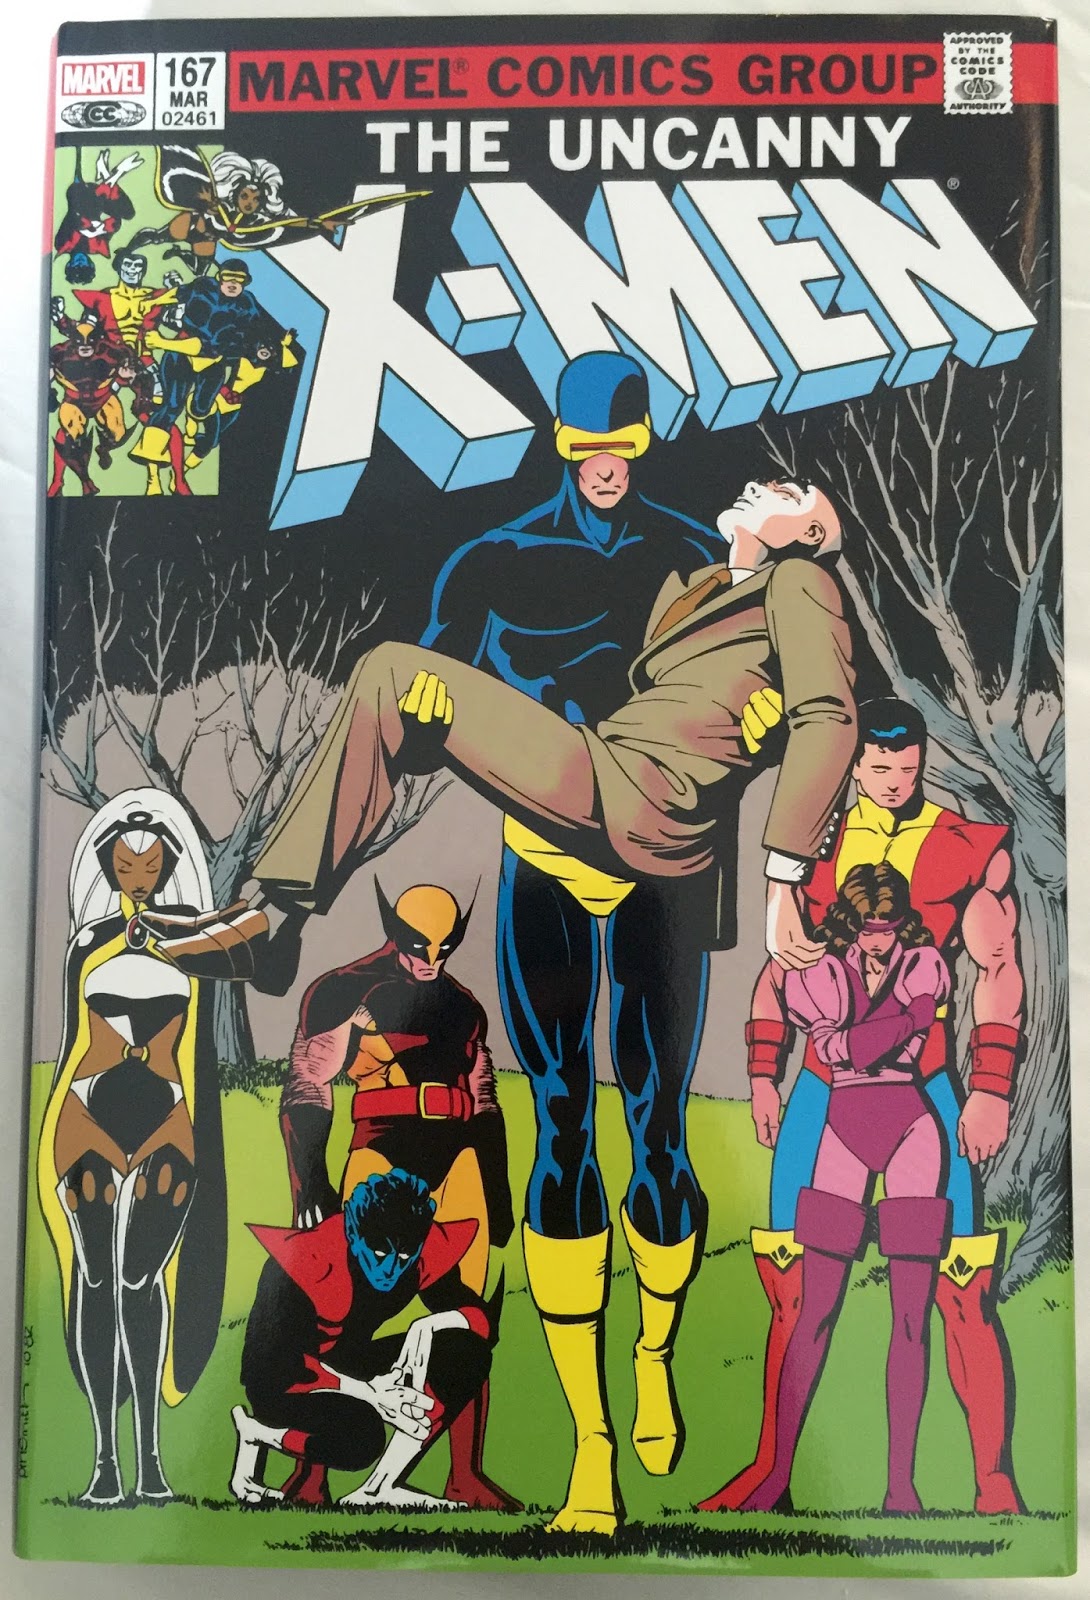 History of X - How Am I Not Myself? - Uncanny X-Men Omnibus Vol. 2